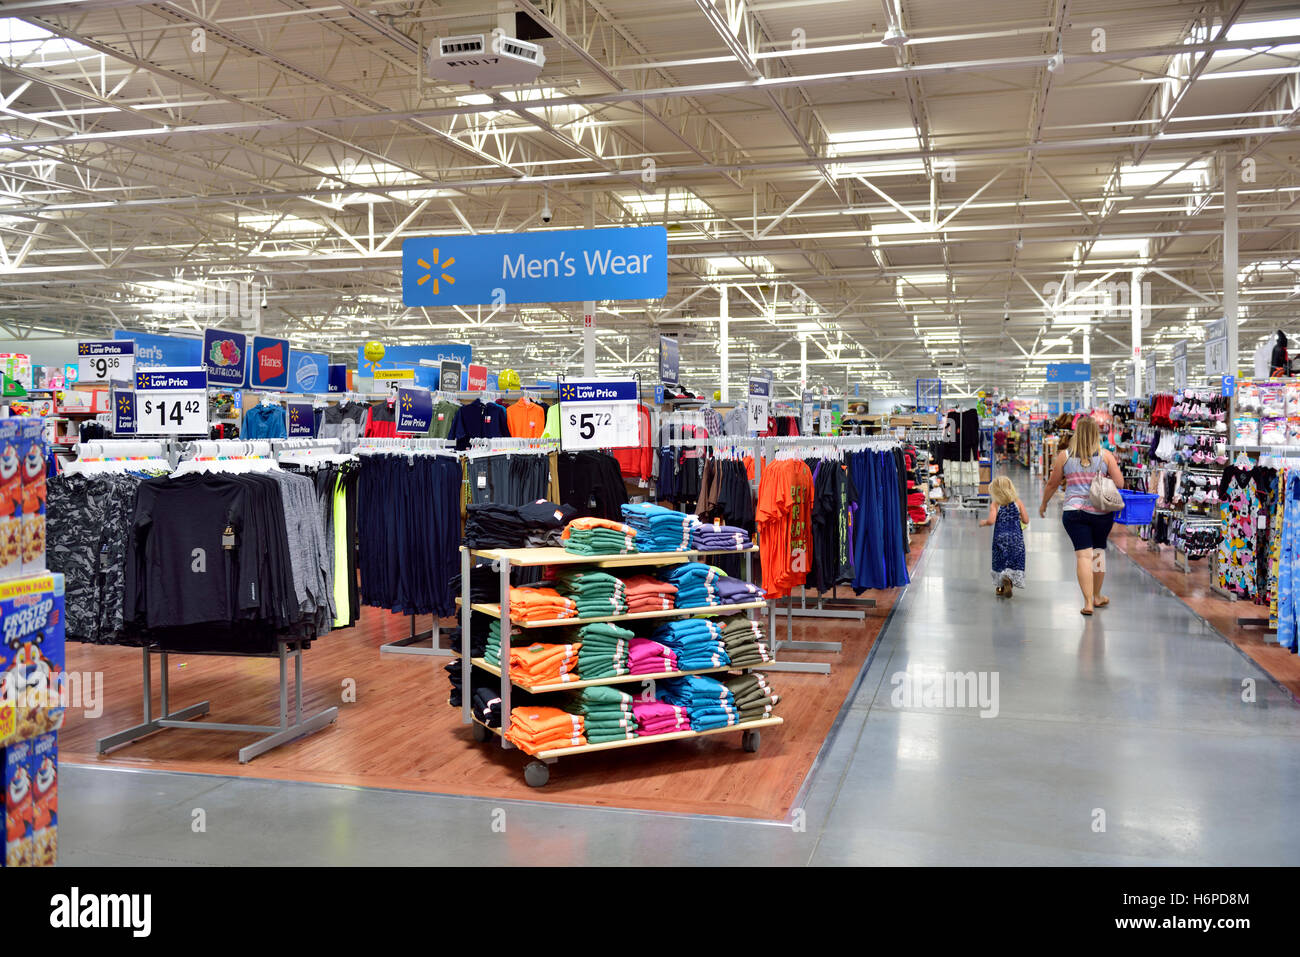 Im Walmart Superstore mit Herrenbekleidung Zeichen Stockfoto